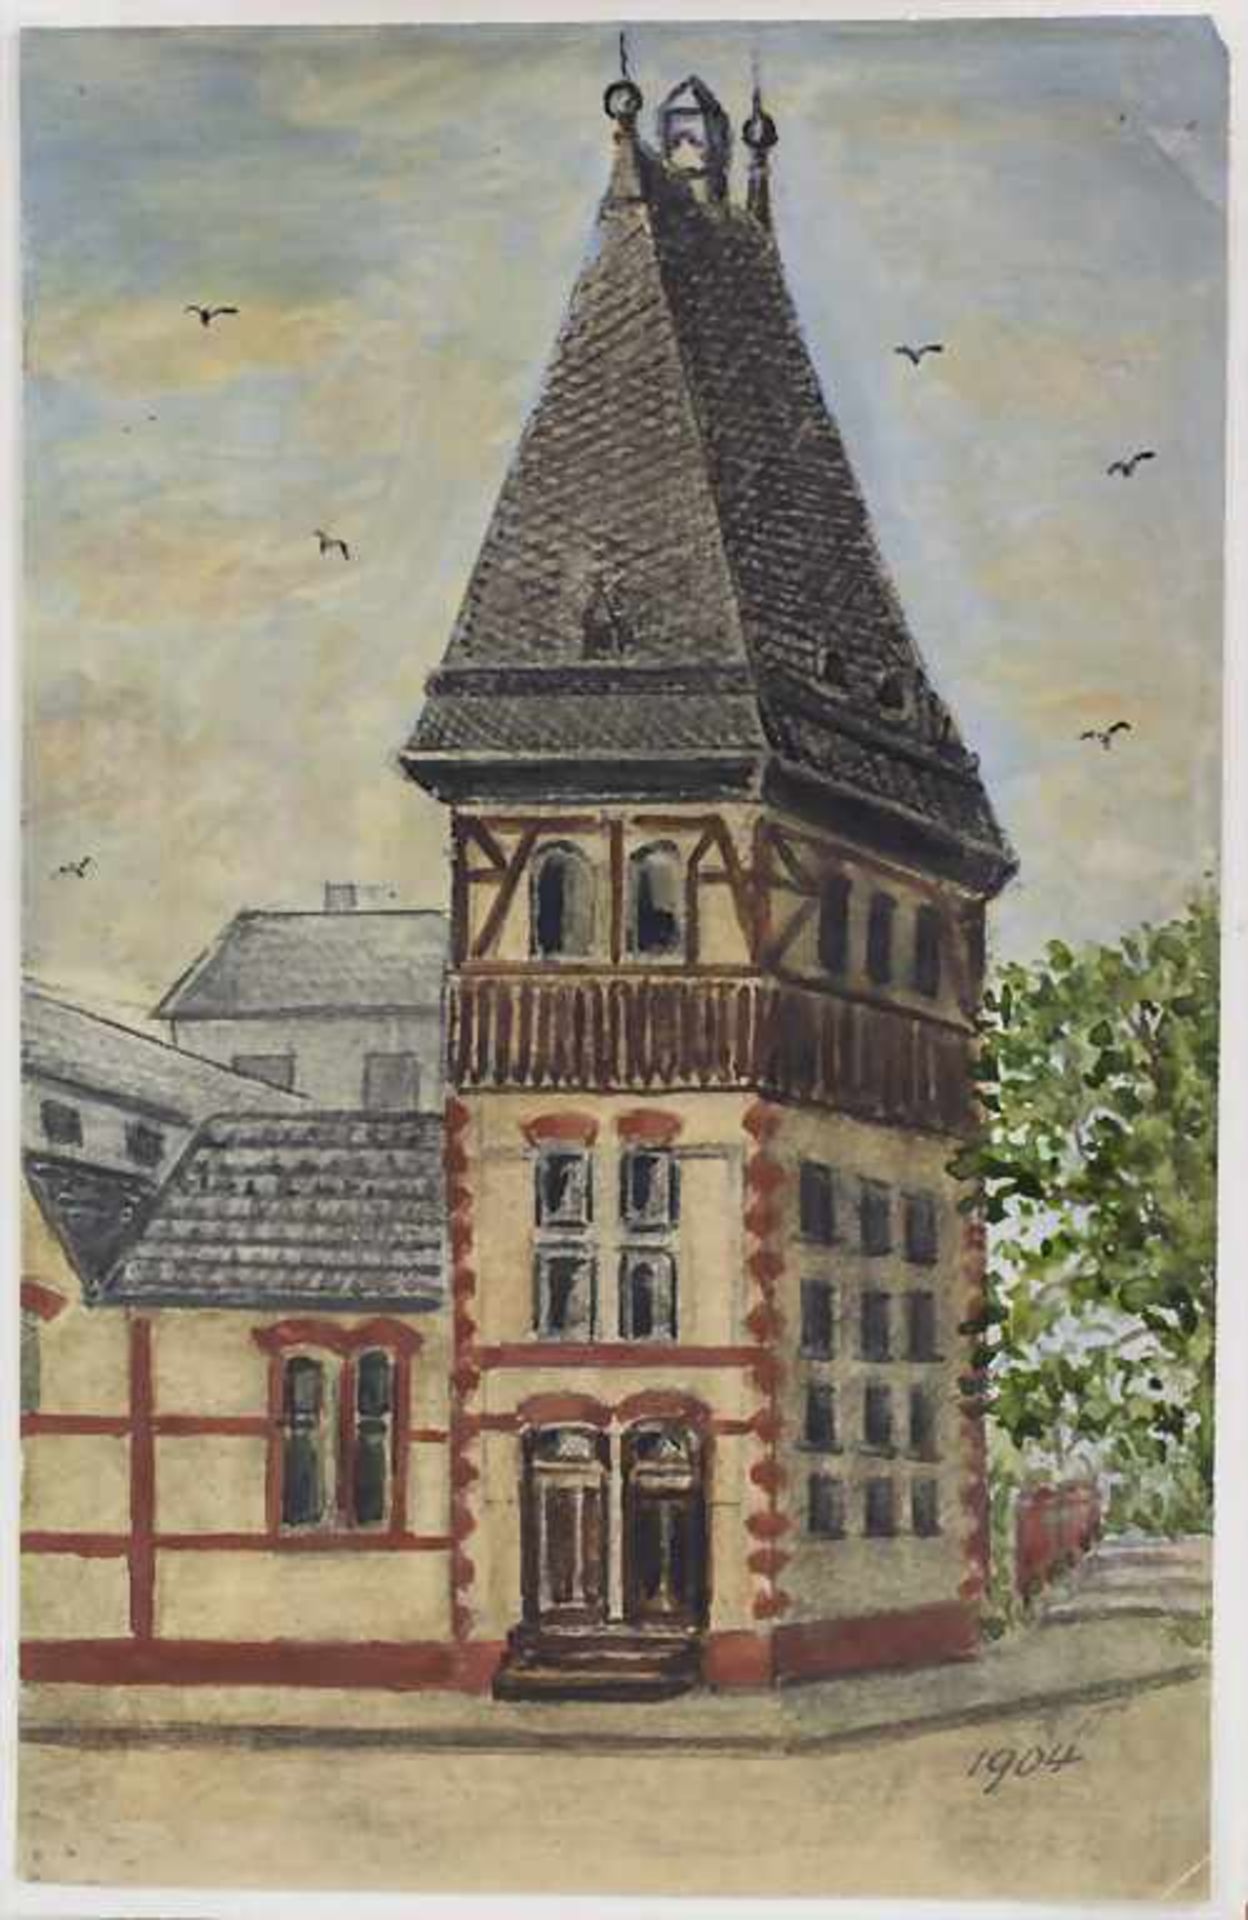 F.W. Schulz (tätig um 1904), 'Turm' und 'Lilie' - Image 2 of 4